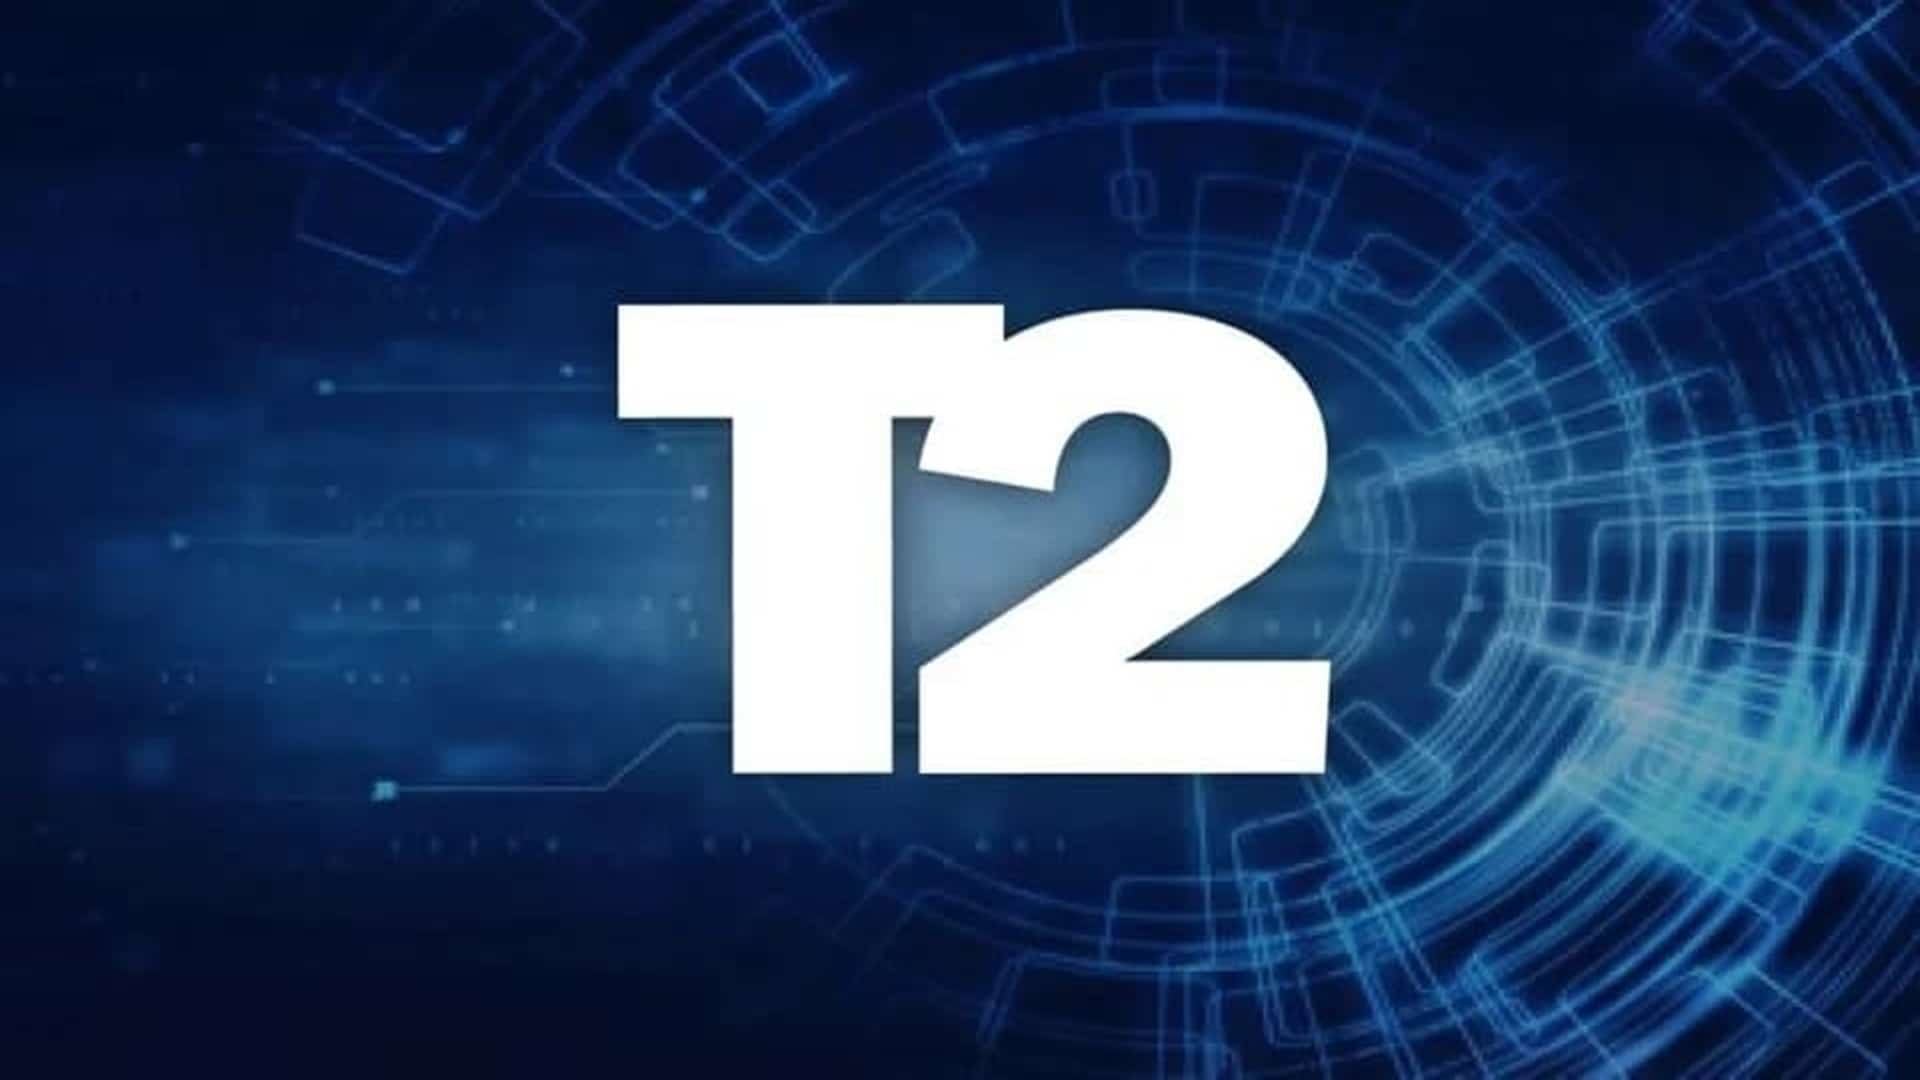 El CEO de Take-Two comenta sobre la posibilidad de ser adquirida por otra corporación de juegos, GamersRD